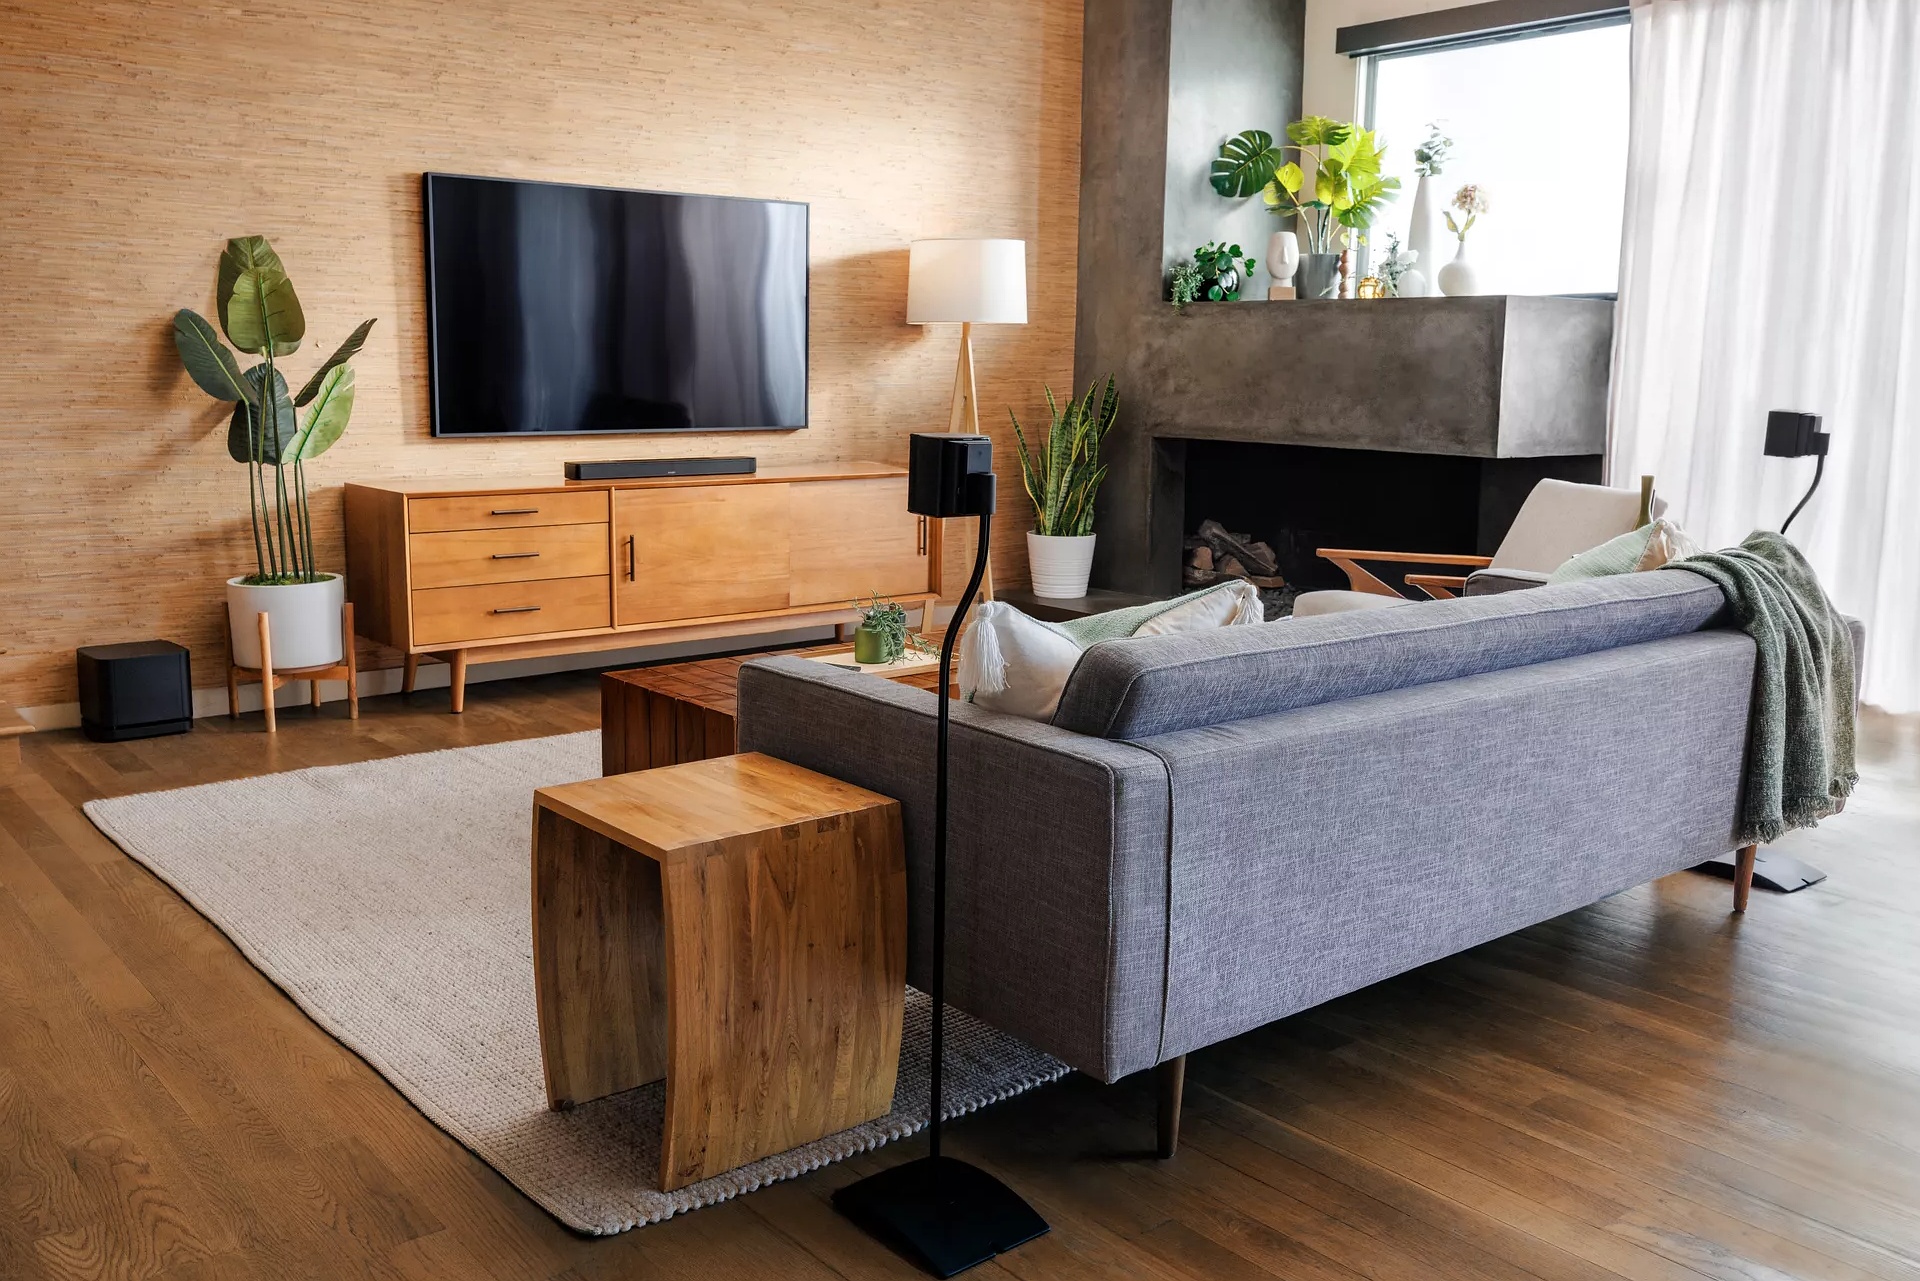 Un cinéma maison dans un salon avec une barre de son Bose sur un meuble télé, enceintes ambiophoniques derrière le canapé et un module de basses 700 à côté d’une plante